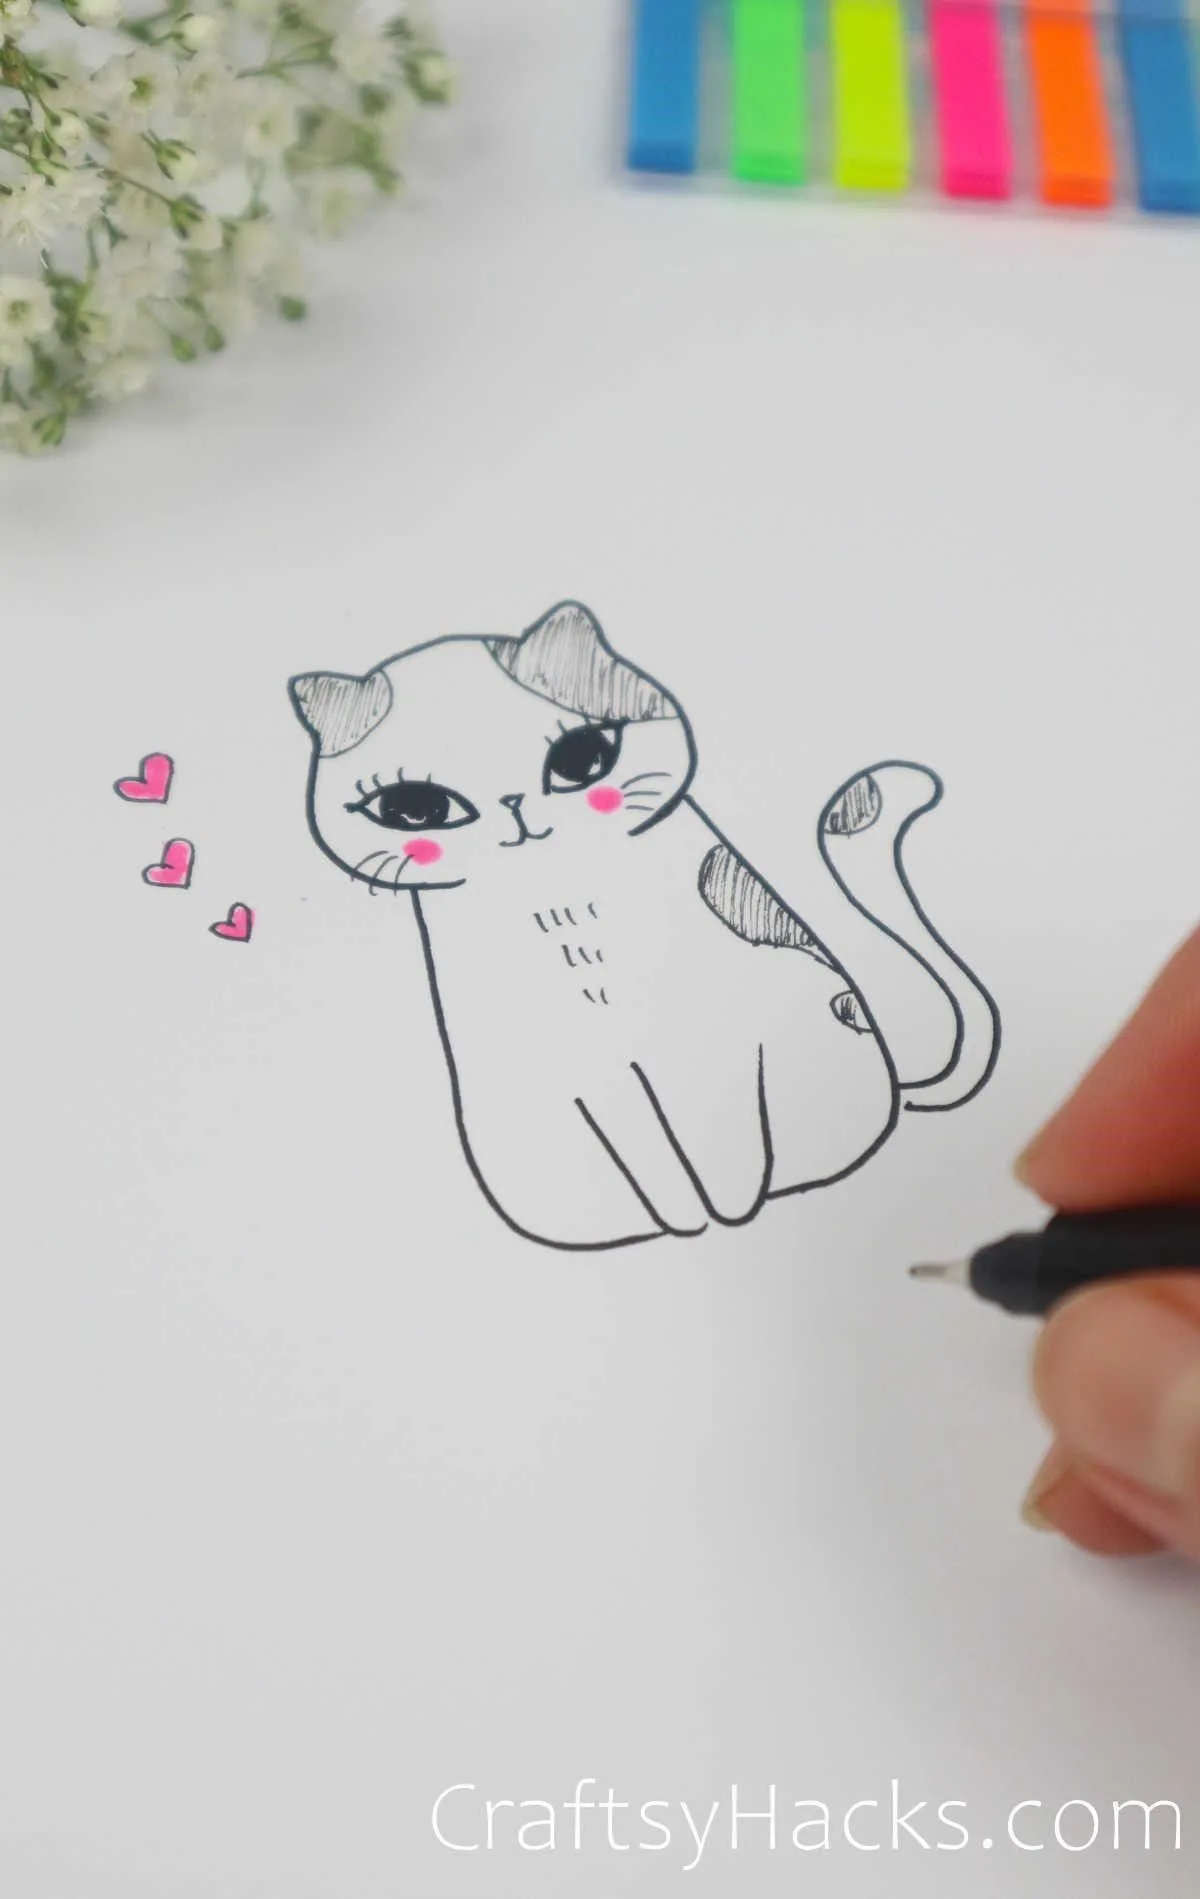 Tabby Cat Drawing - HelloArtsy-saigonsouth.com.vn